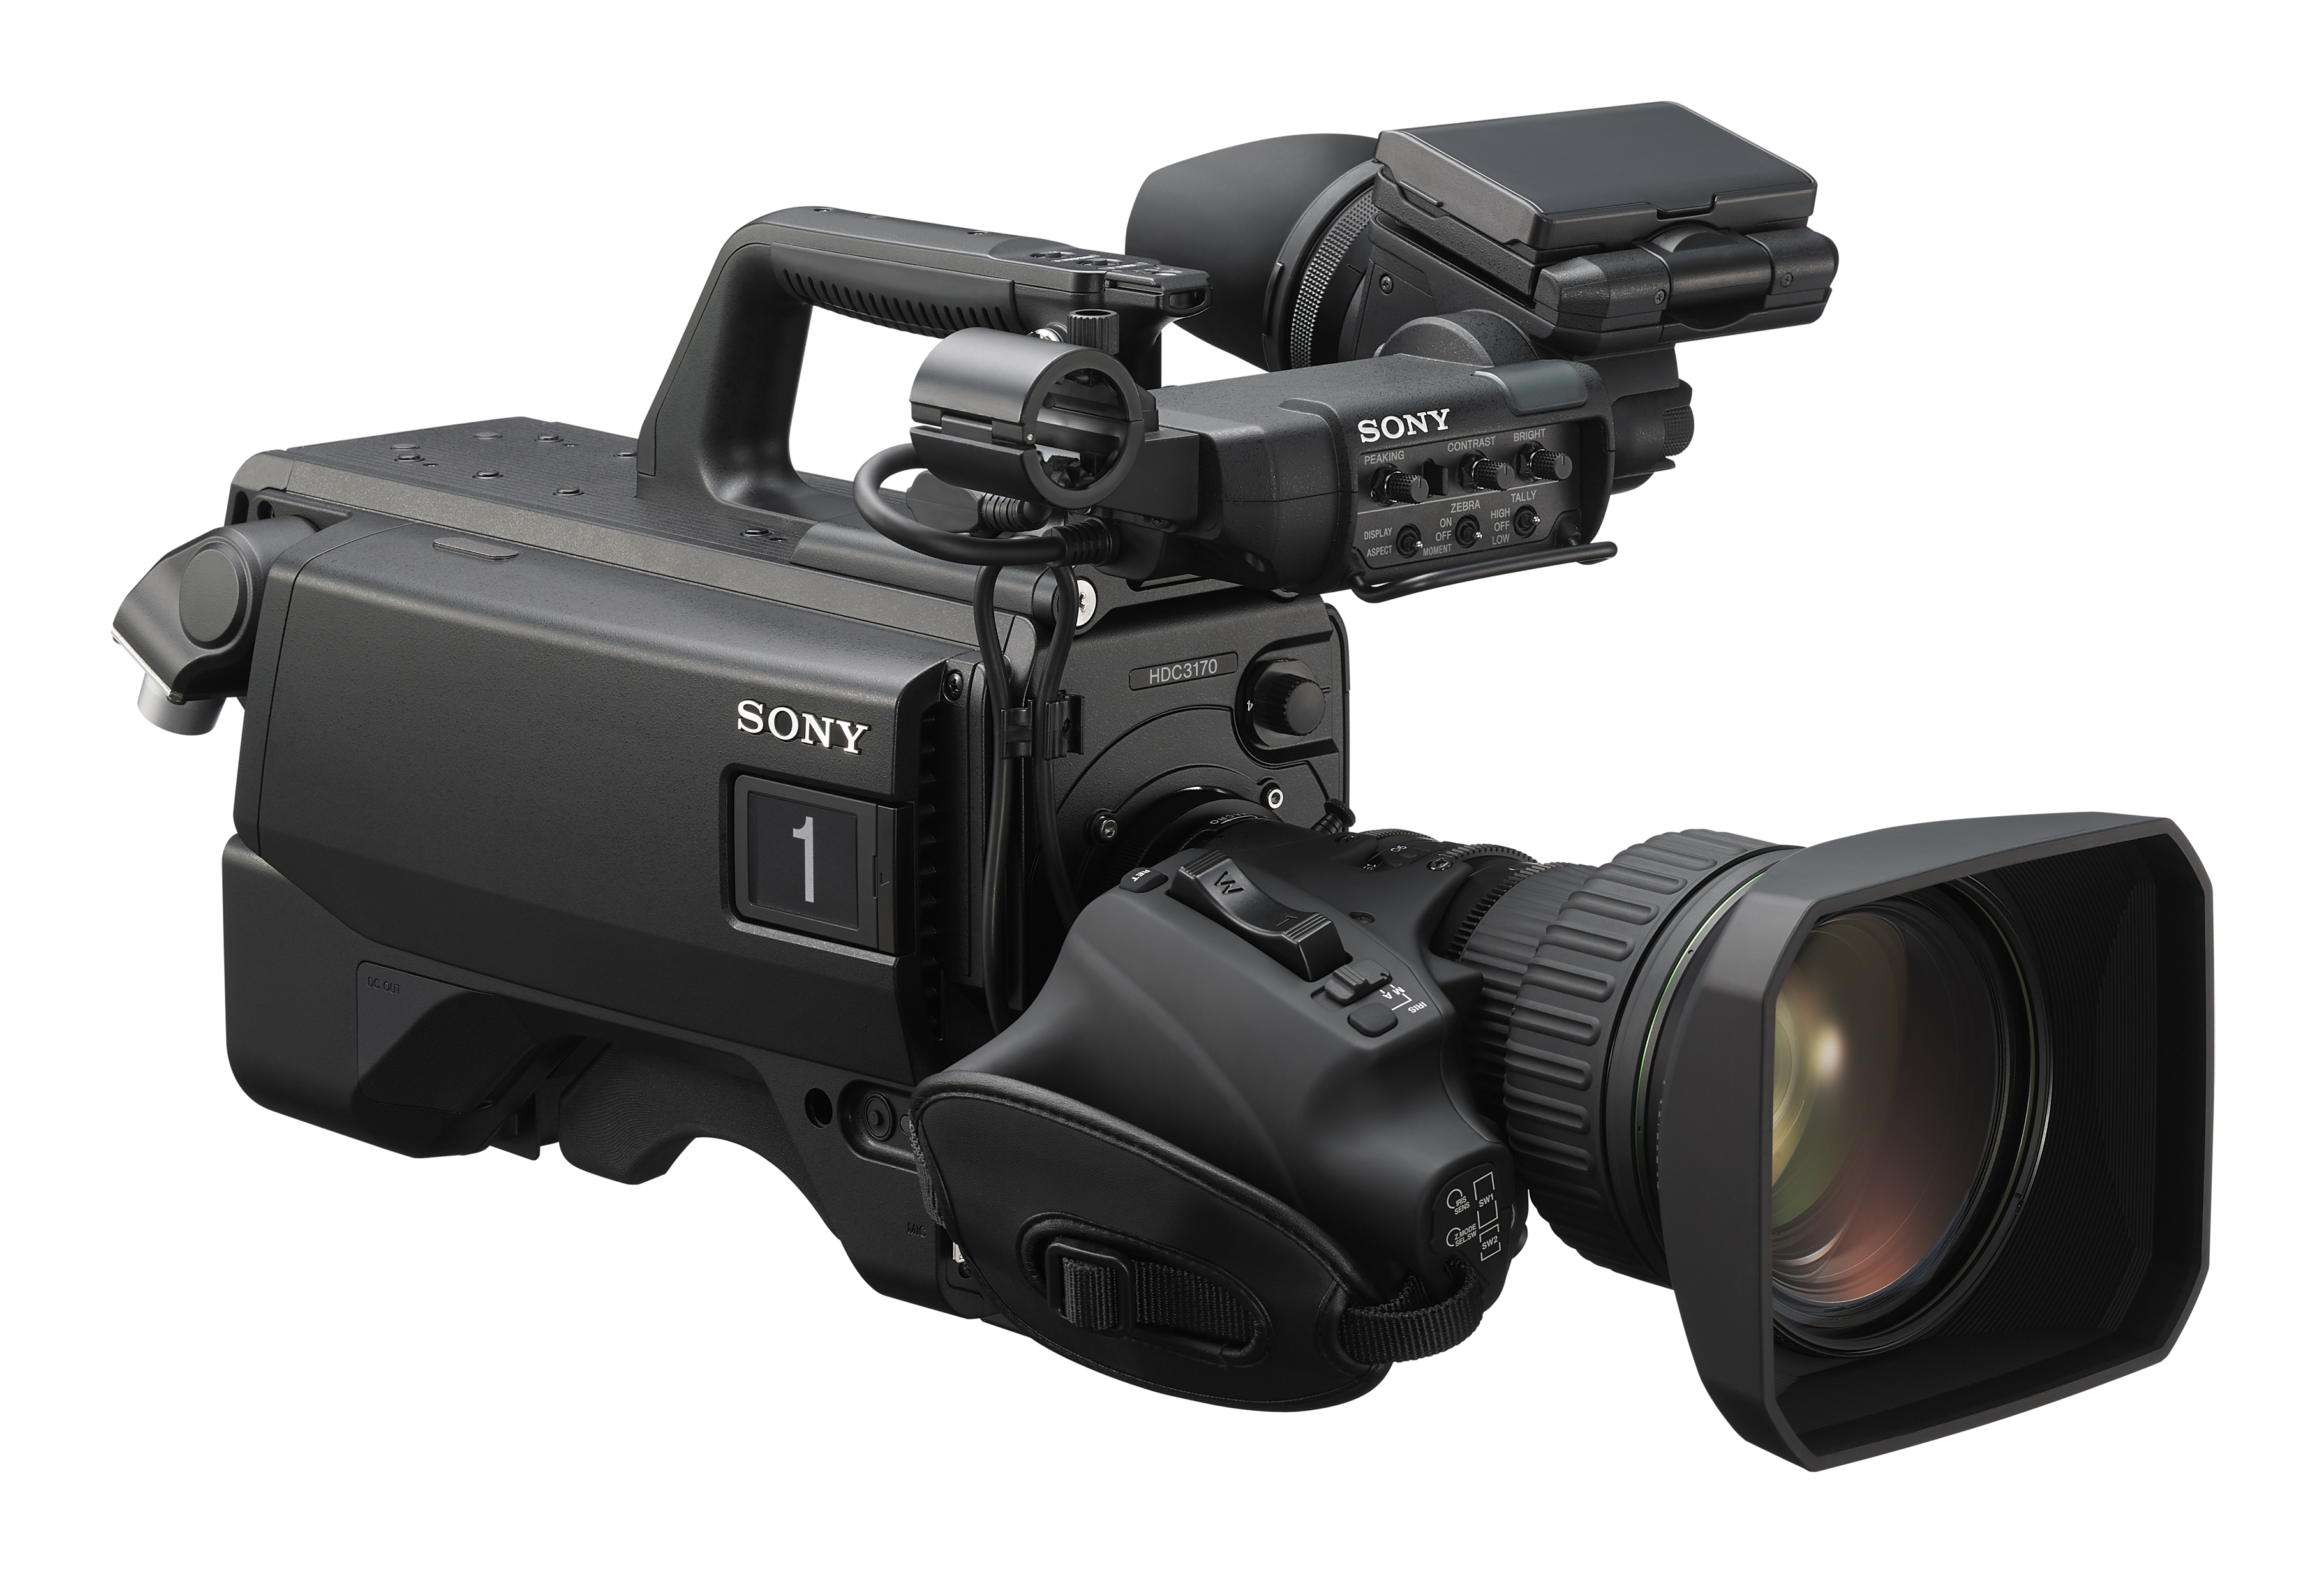 Sony HDC-3170 4K studiokameraLemo 4M